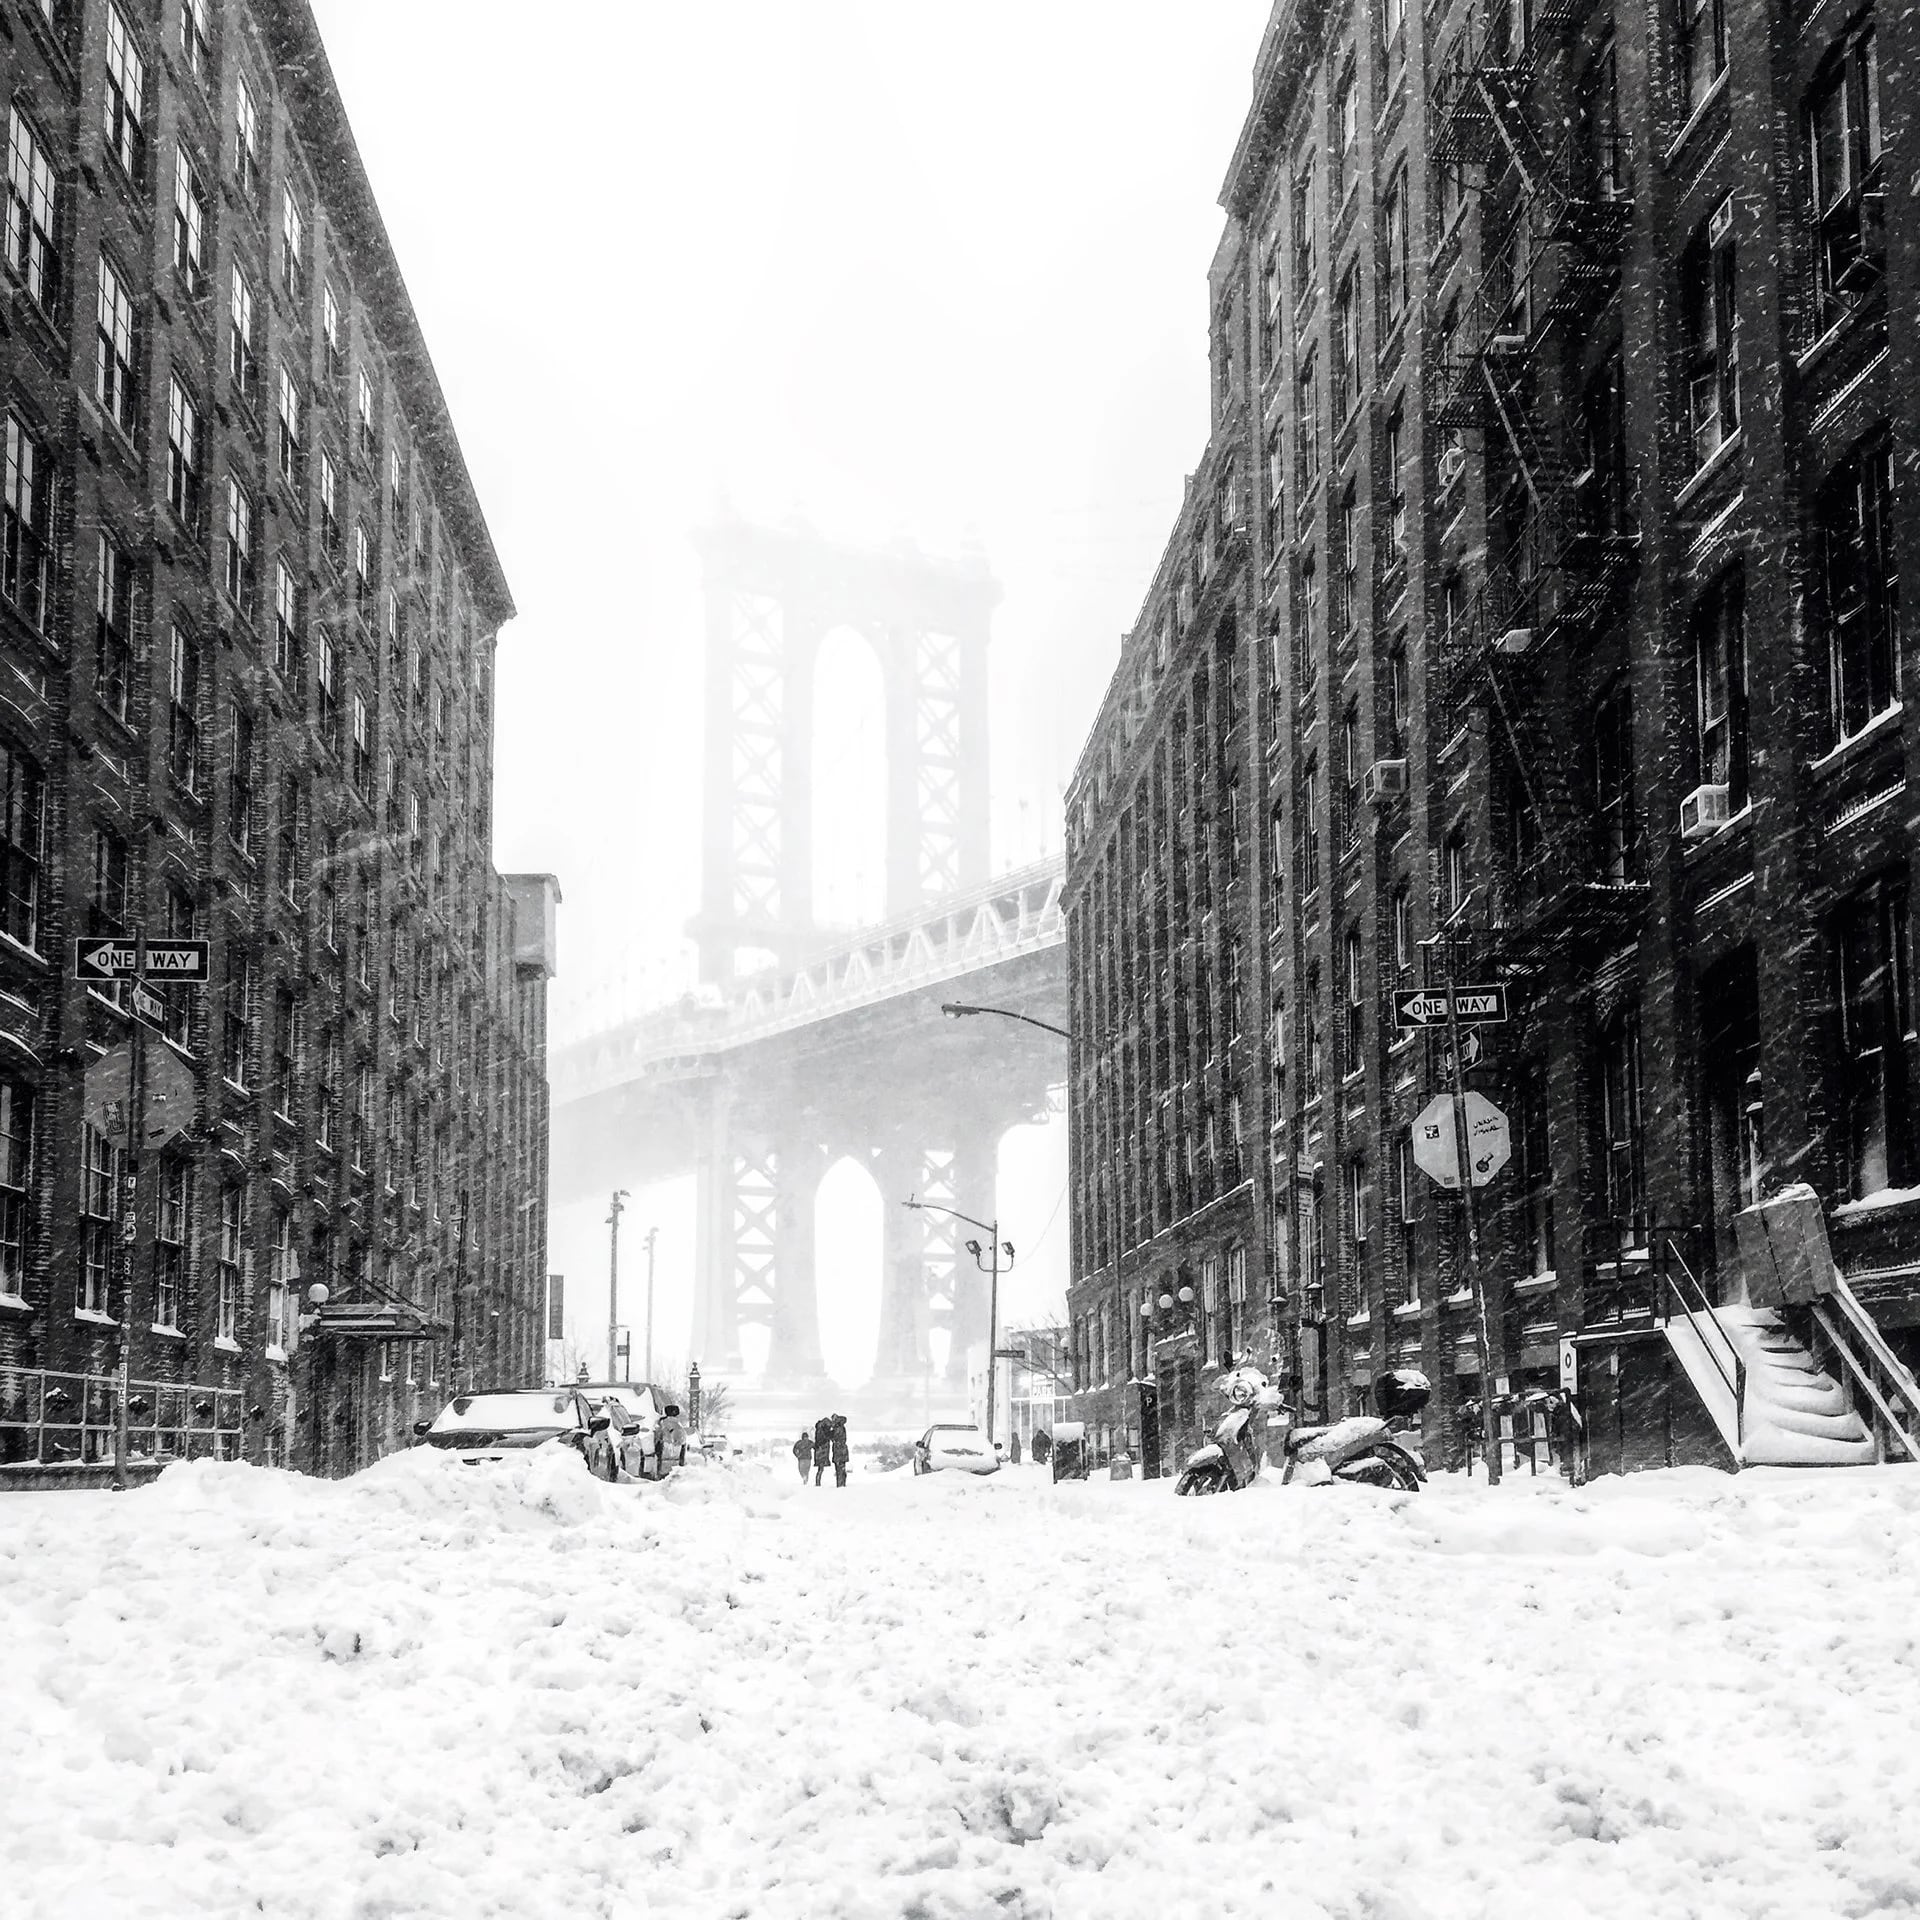 La categoría Estaciones fue ganada por Tom Valencia con su foto de Brooklyn, Nueva York durante una tormenta en invierno (Valencia Tom)